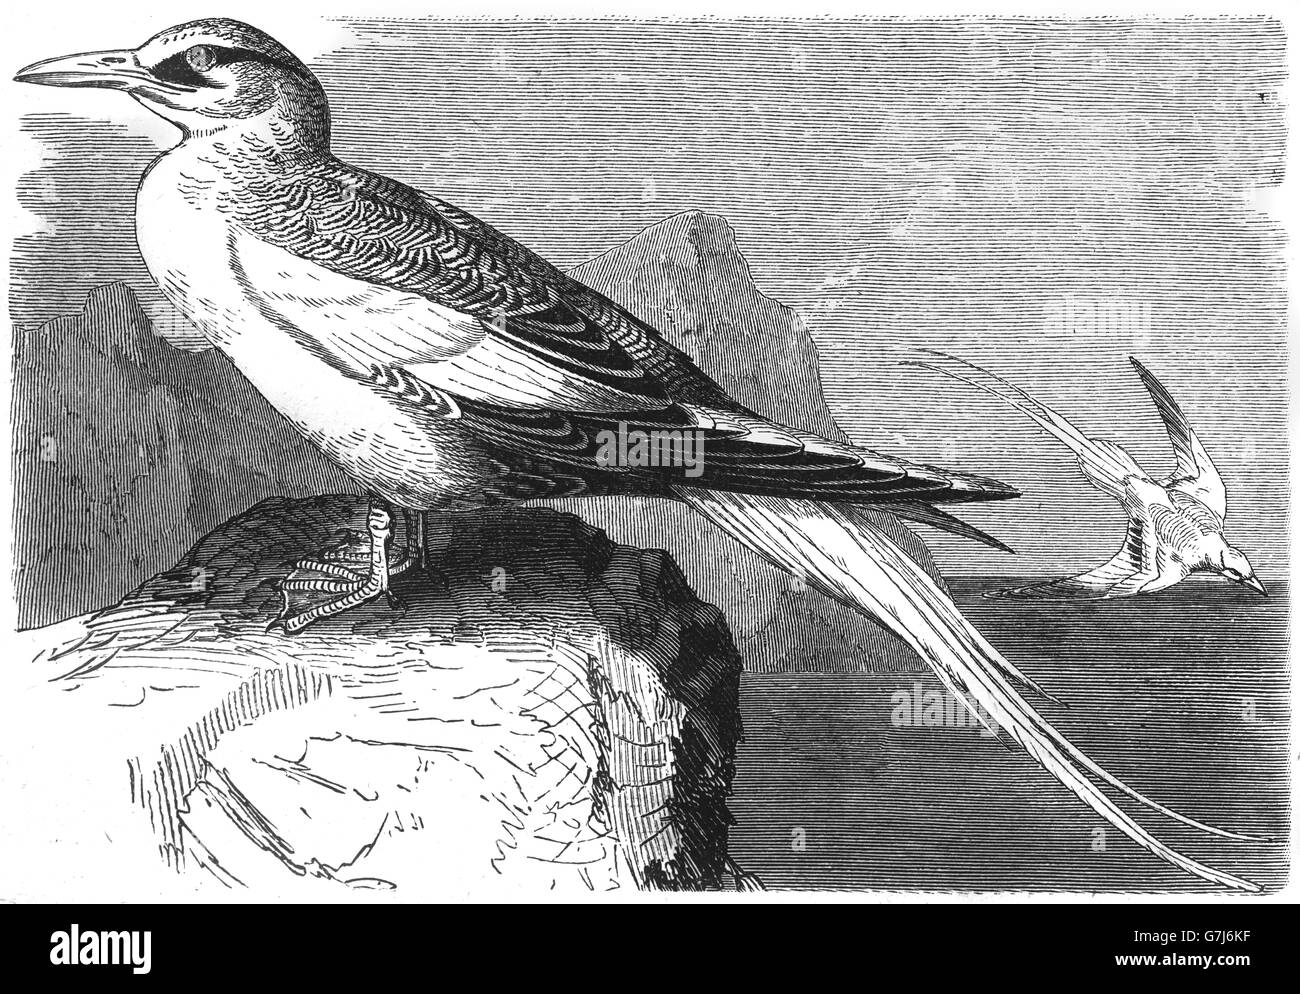 Rosso-fatturati tropicbird, Phaethon aethereus, boatswain bird, illustrazione dal libro datato 1904 Foto Stock